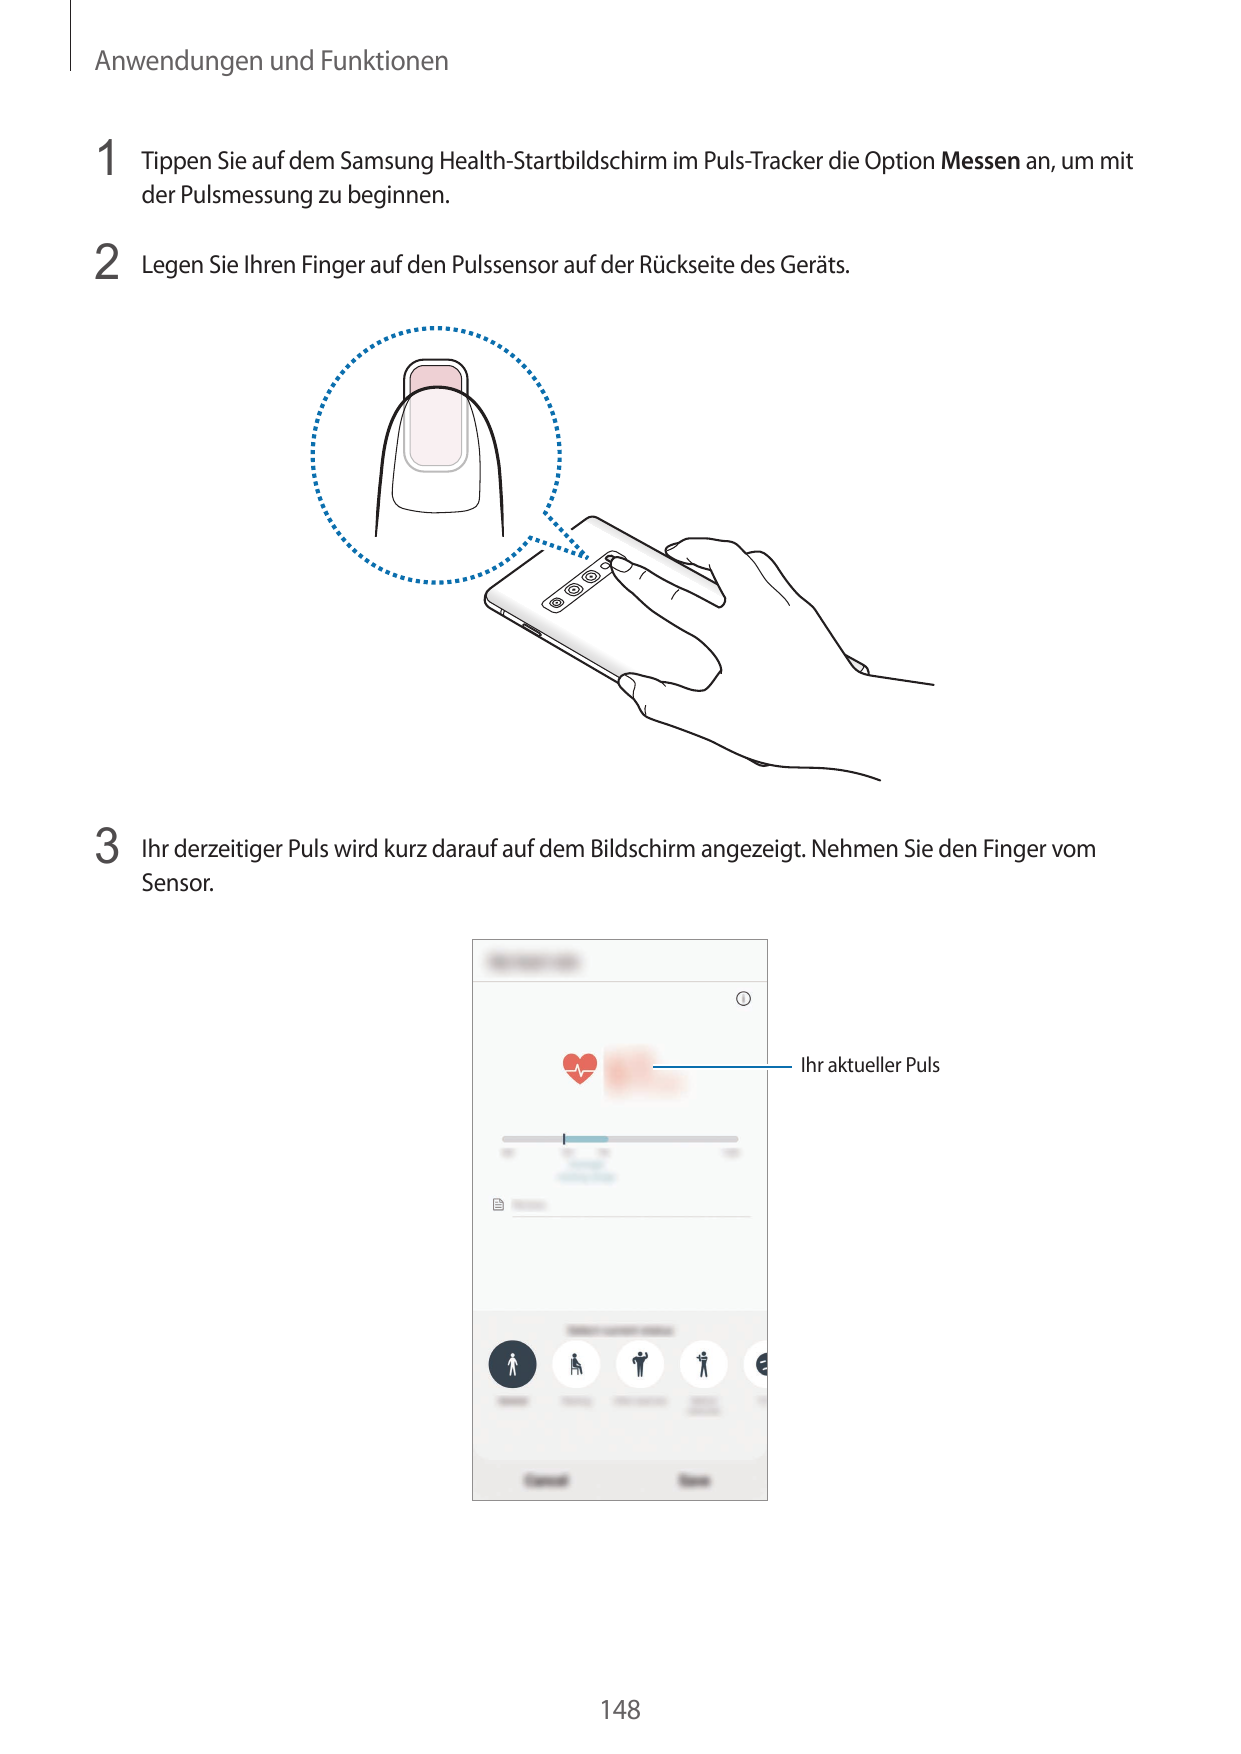 Anwendungen und Funktionen1 Tippen Sie auf dem Samsung Health-Startbildschirm im Puls-Tracker die Option Messen an, um mitder Pu